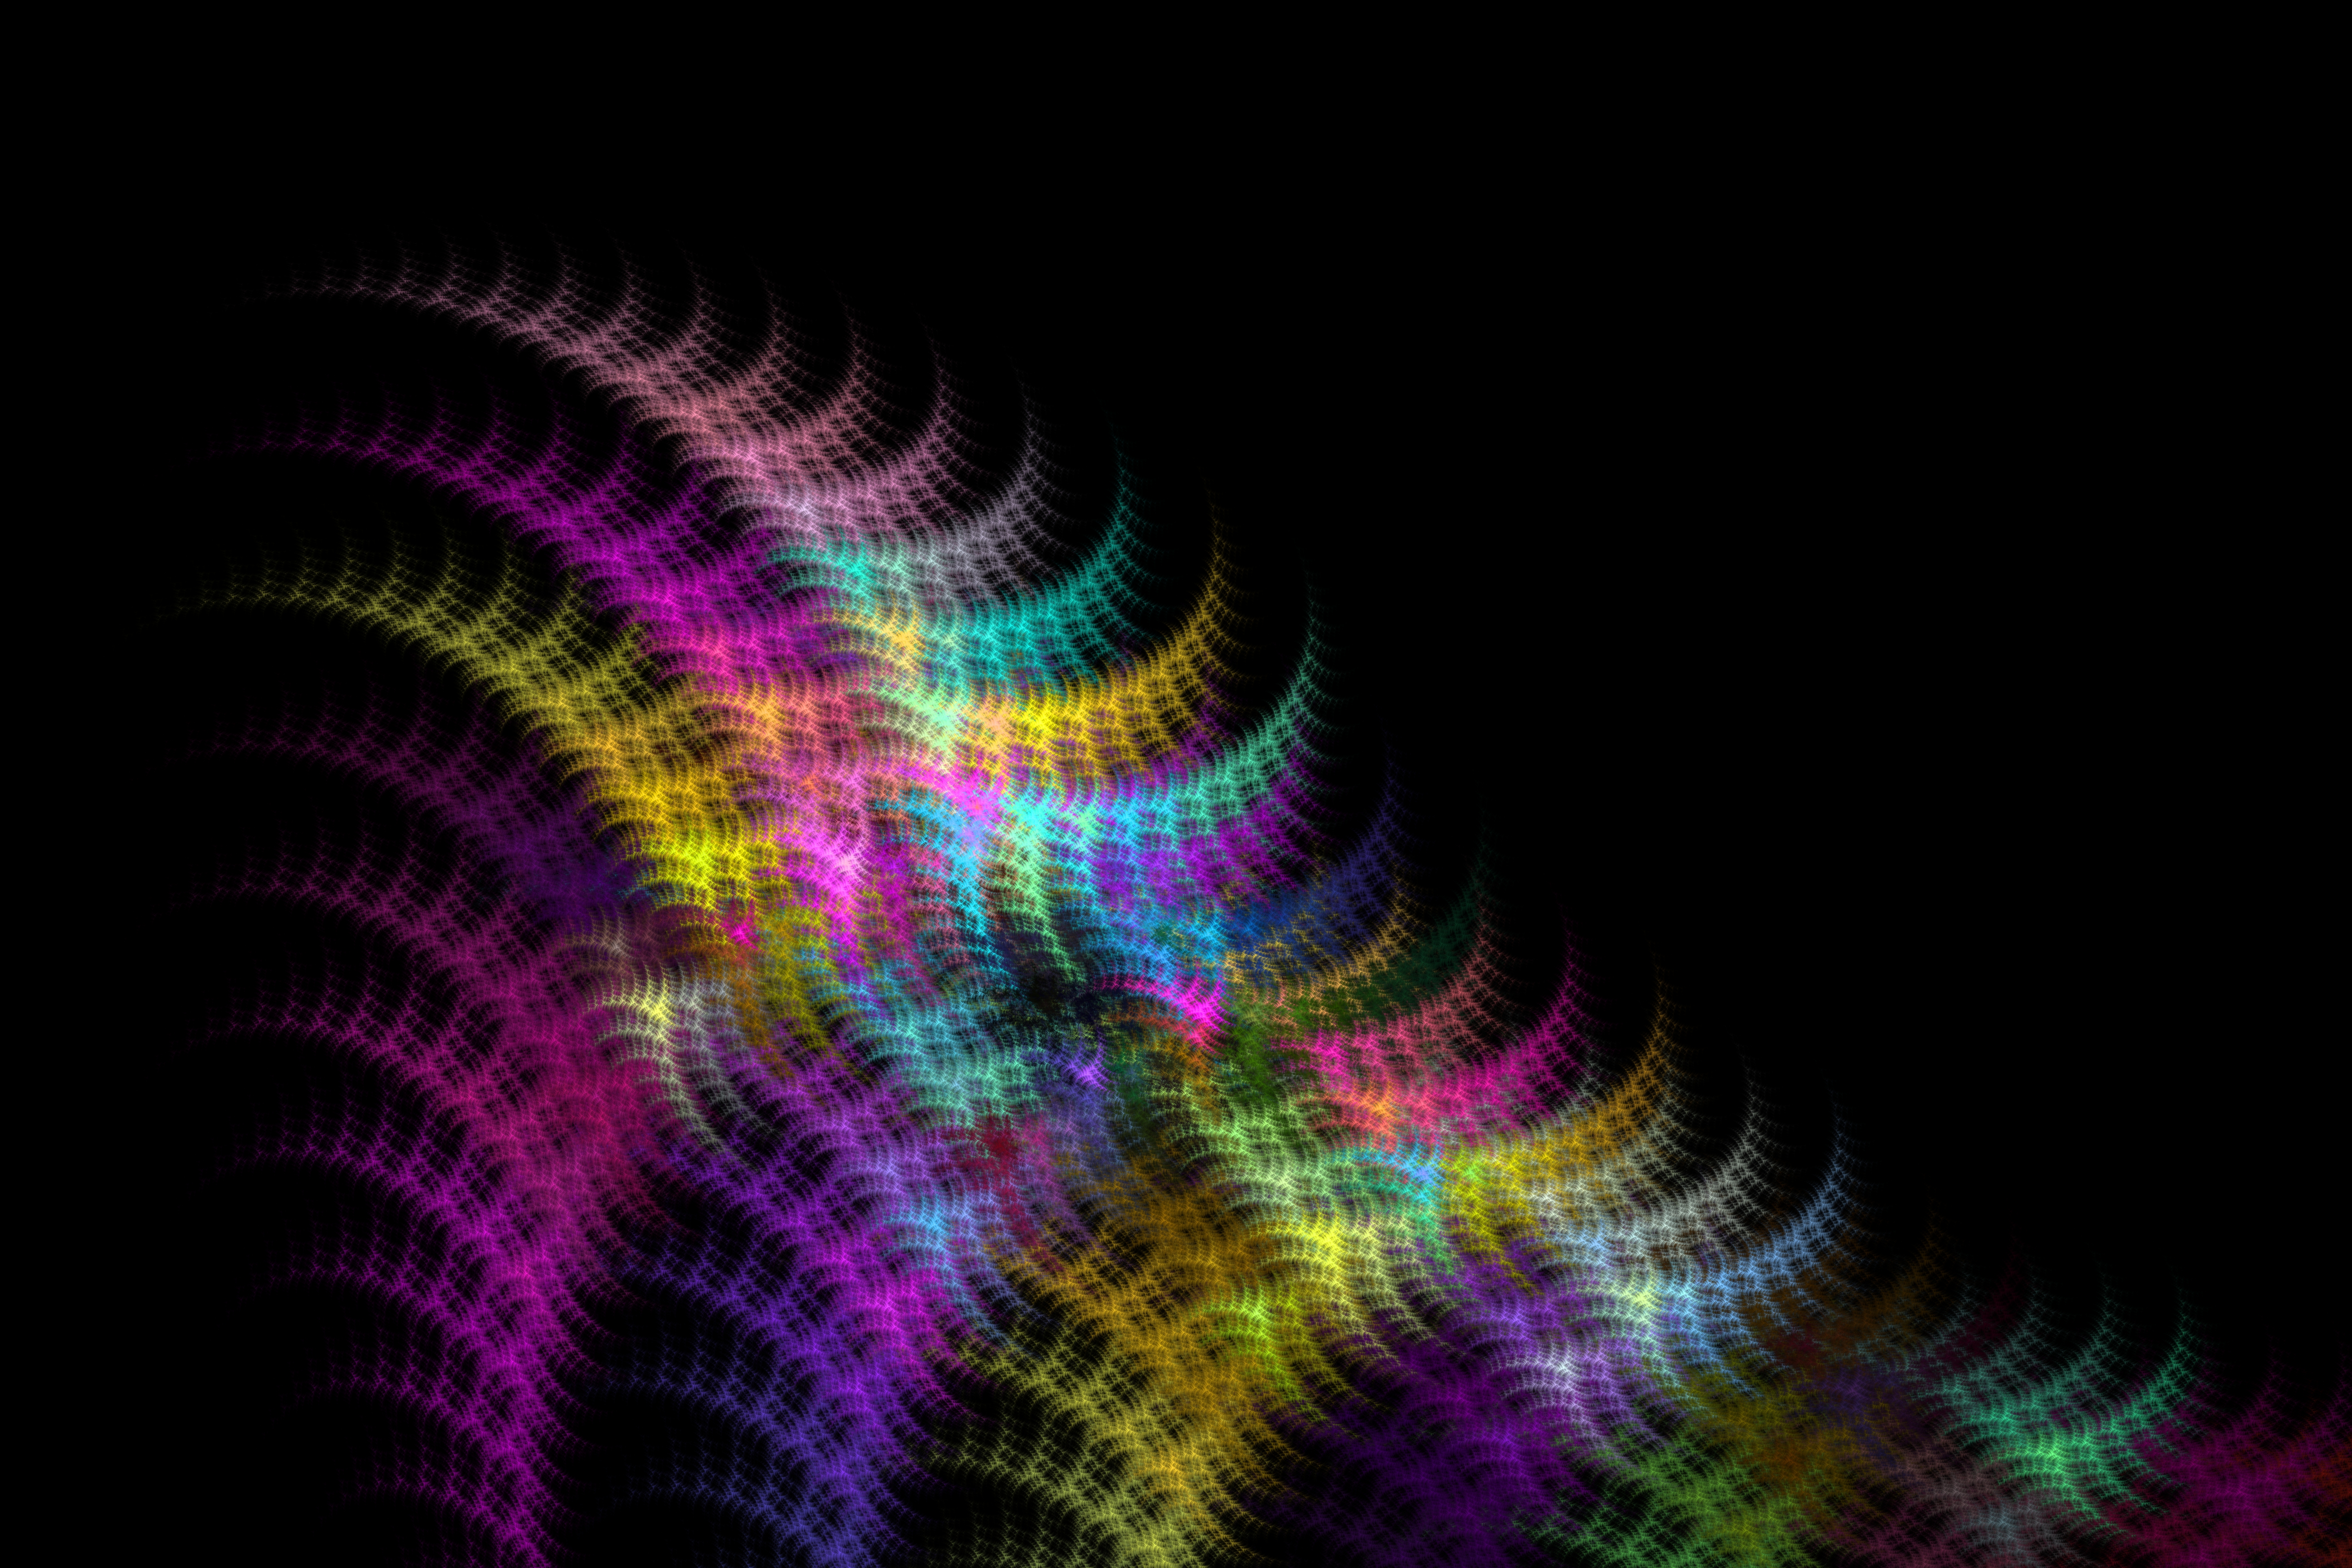 General 6000x4000 fractal fractal flame simple background dark pattern digital art technology